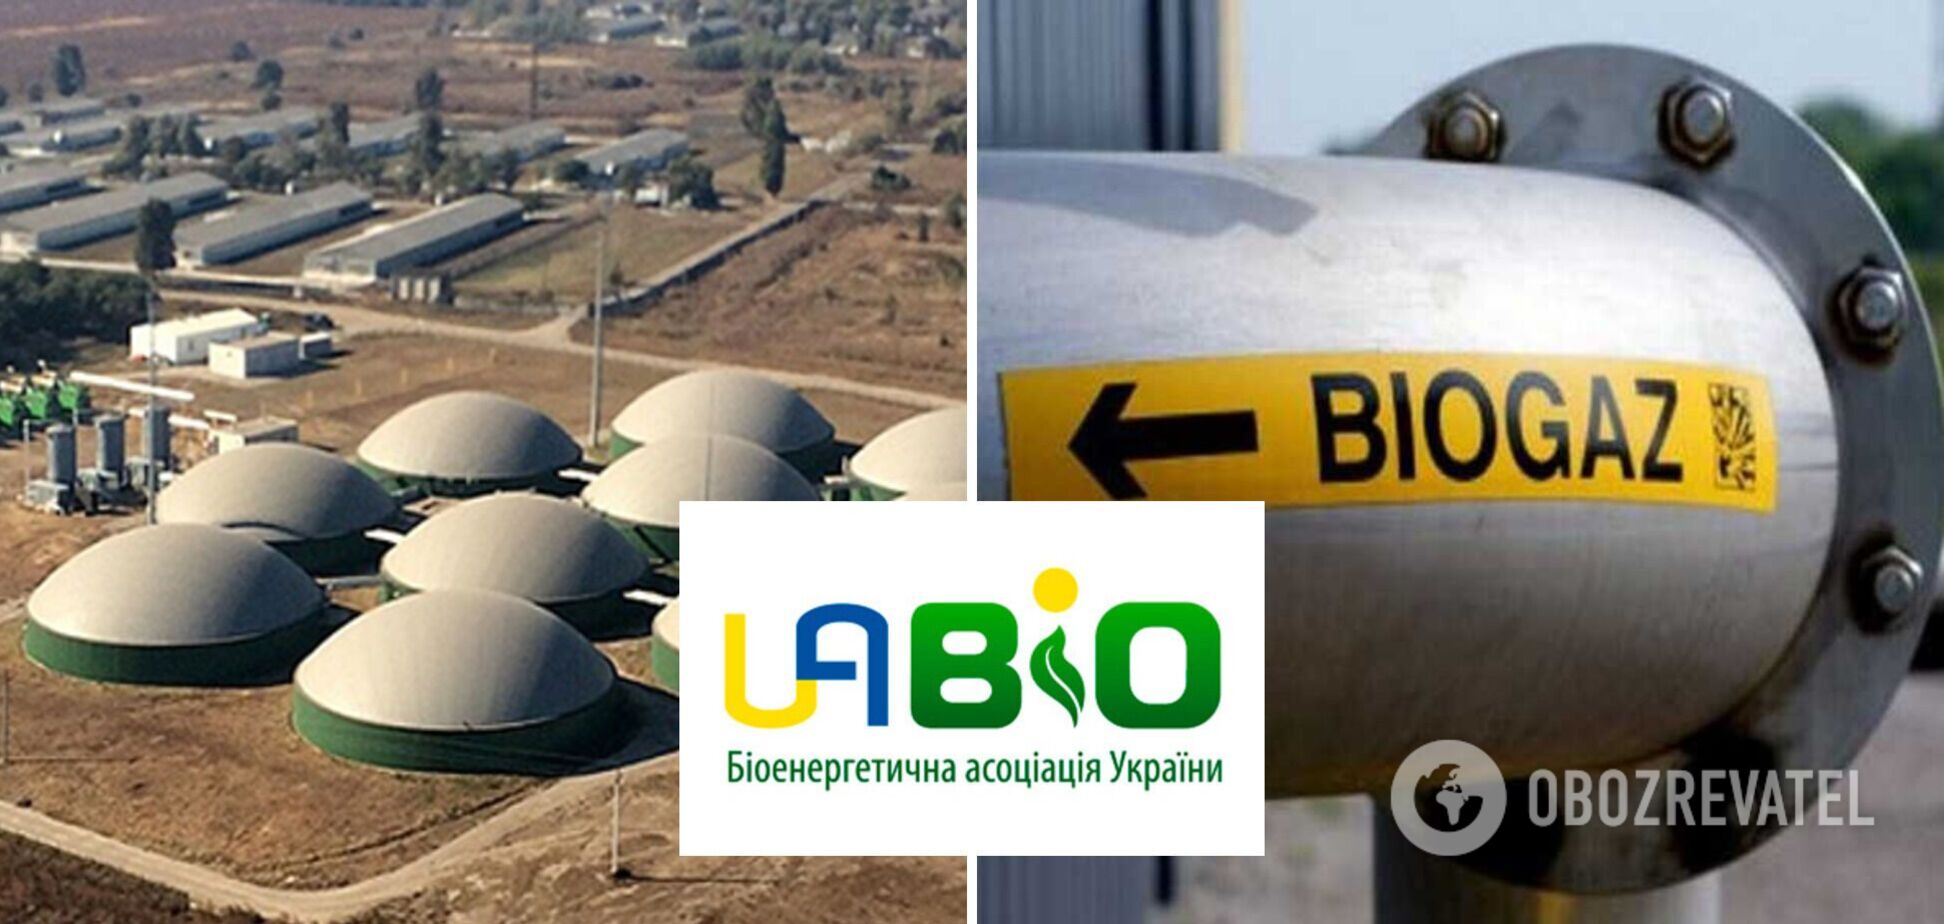 Биогазовые электростанции Украины под риском остановки из-за искусственного ограничения расчетов – инвесторы